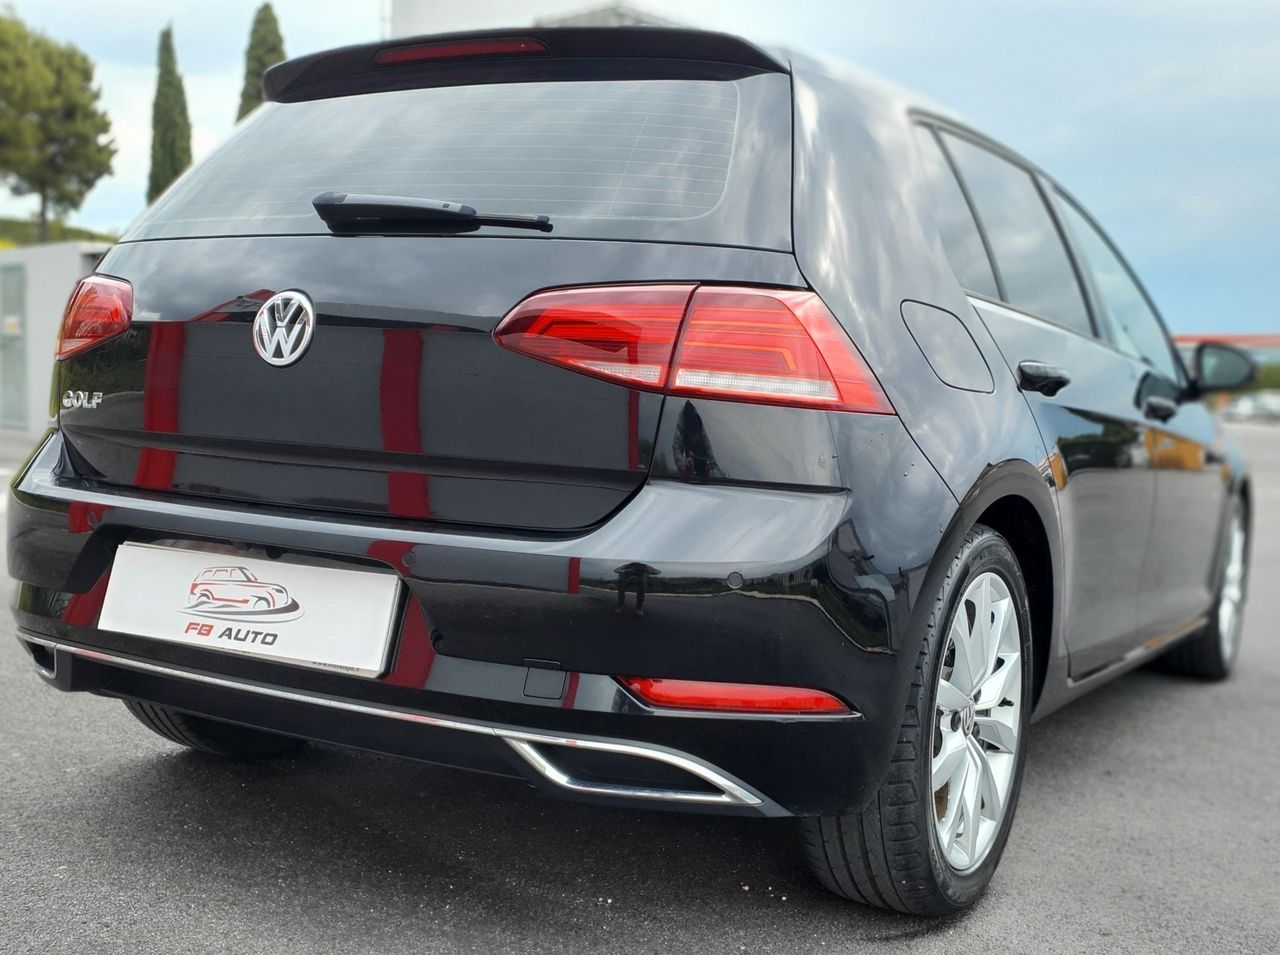 Volkswagen Golf 1.6 2019 115CV 55milakm